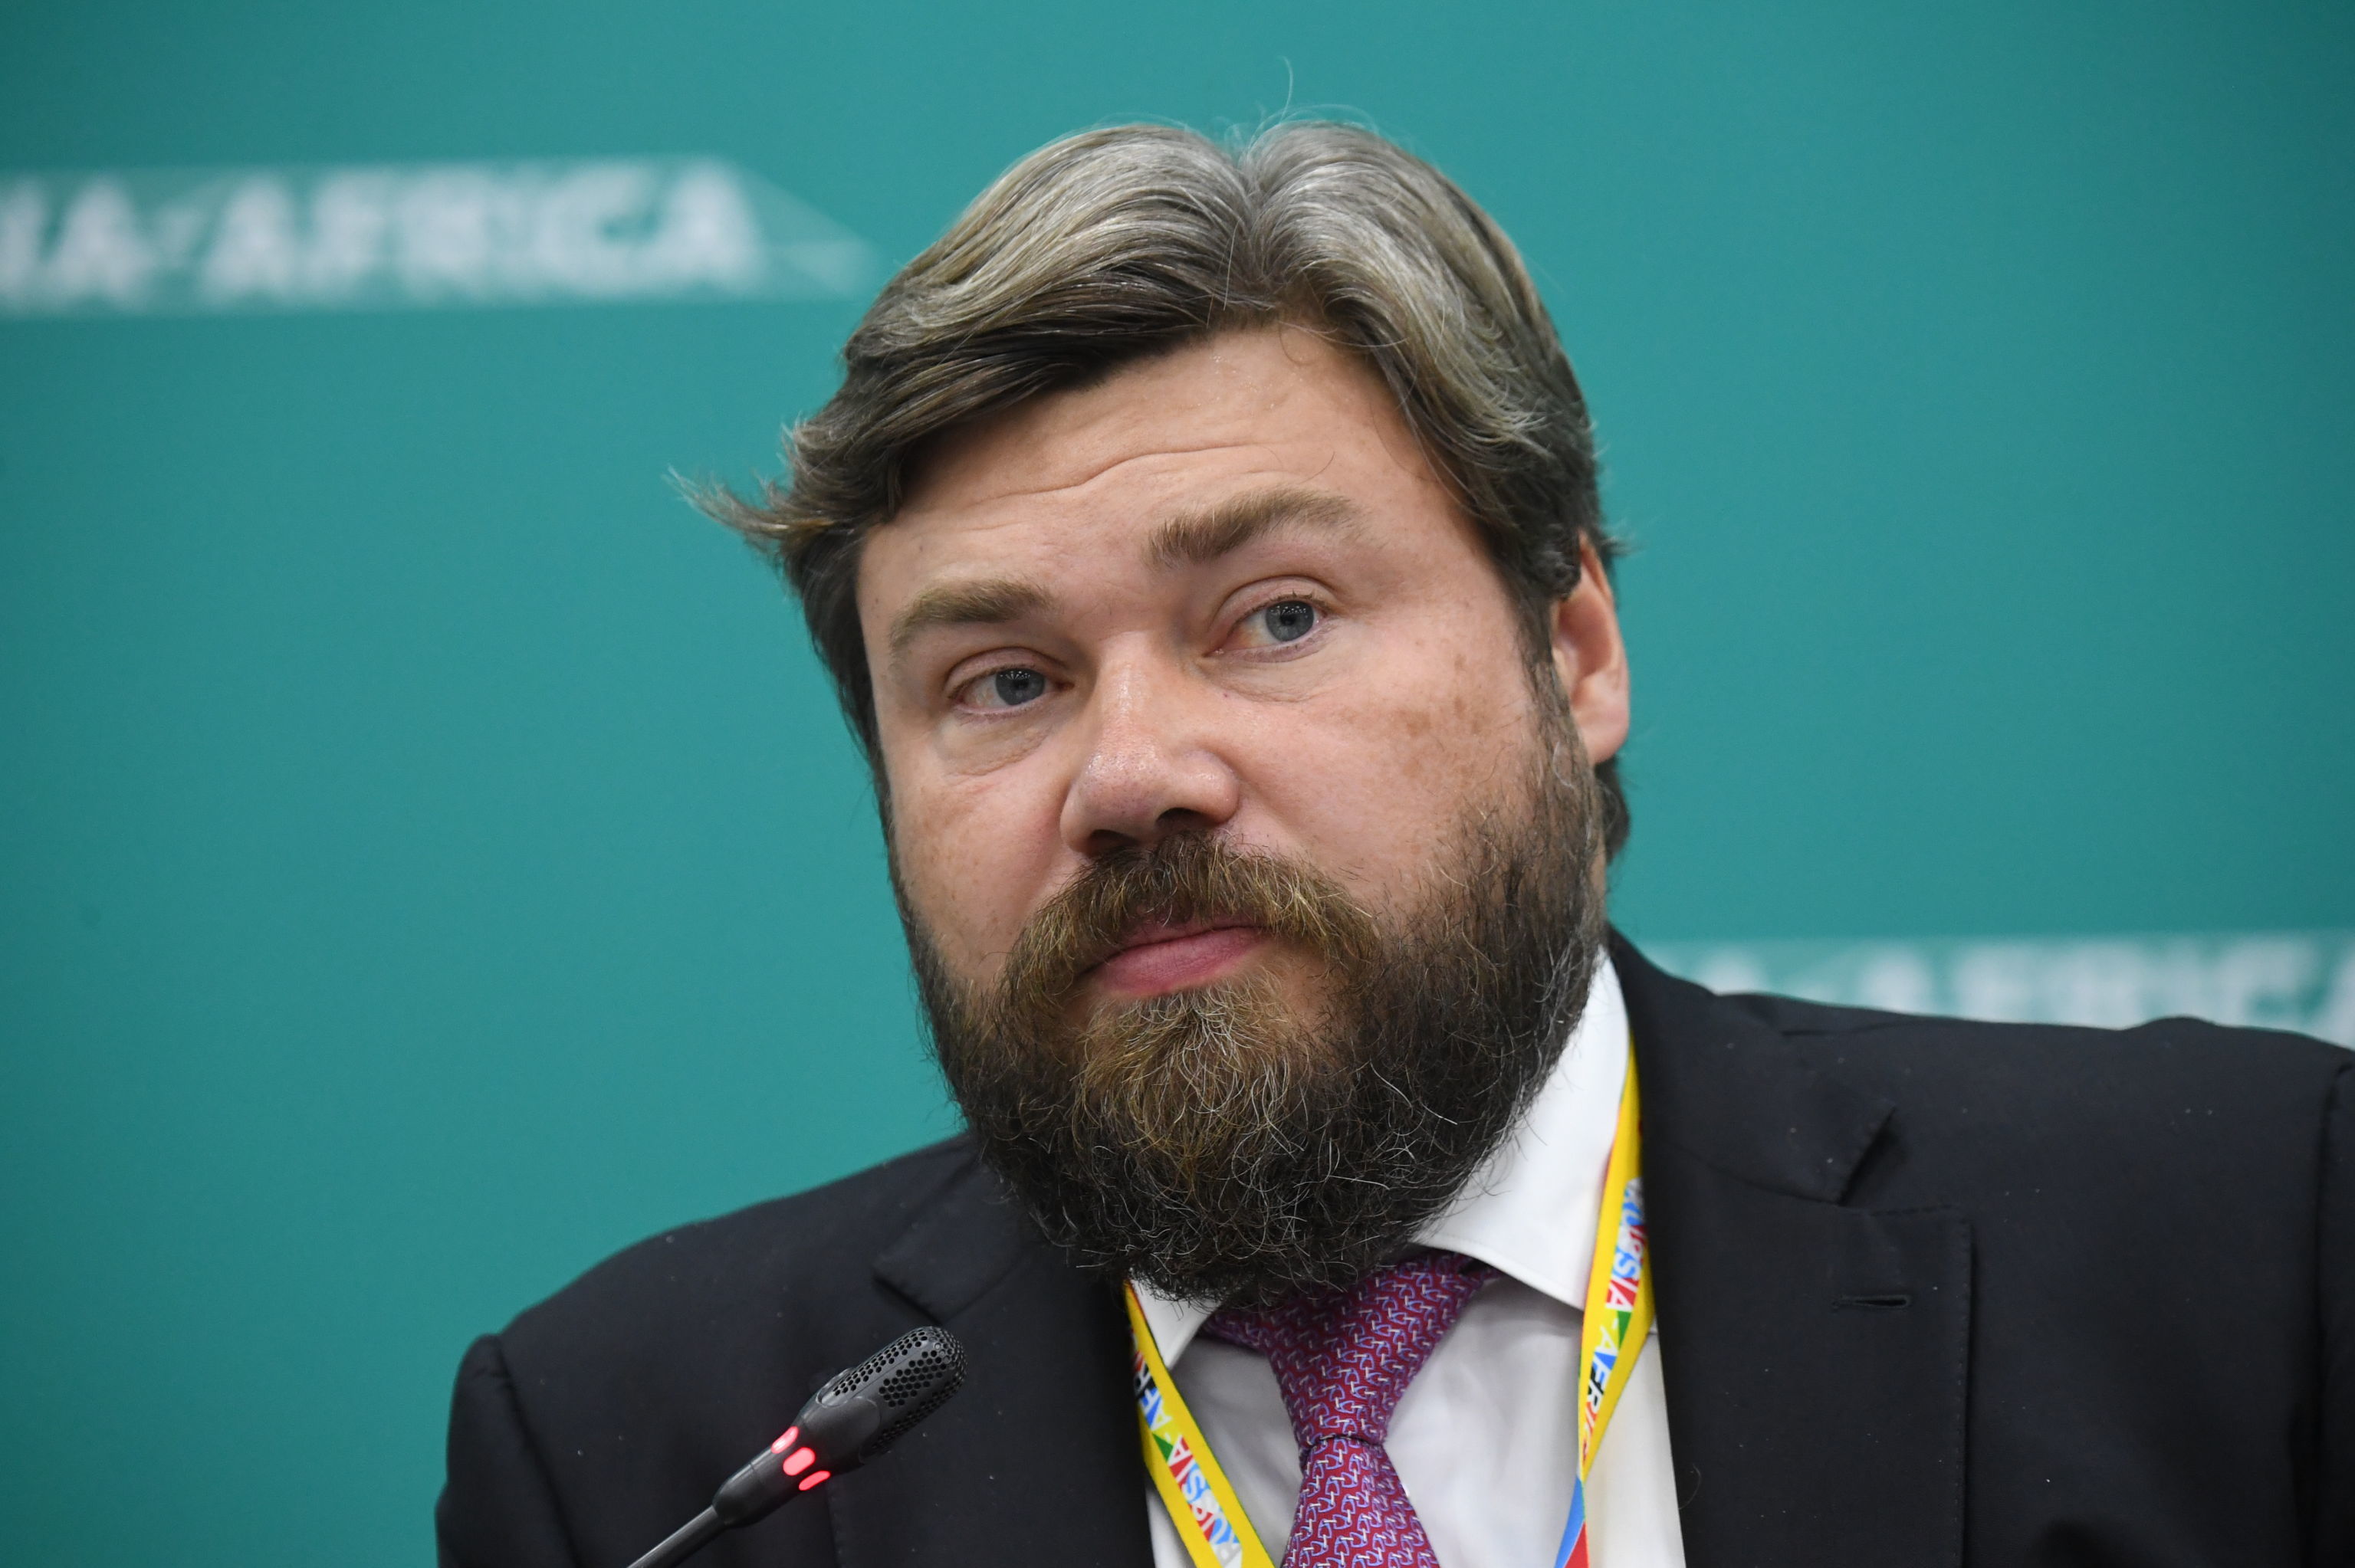 Председатель наблюдательного совета Международного агентства суверенного развития (IASD), владелец телеканала "Царьград" Константин Малофеев